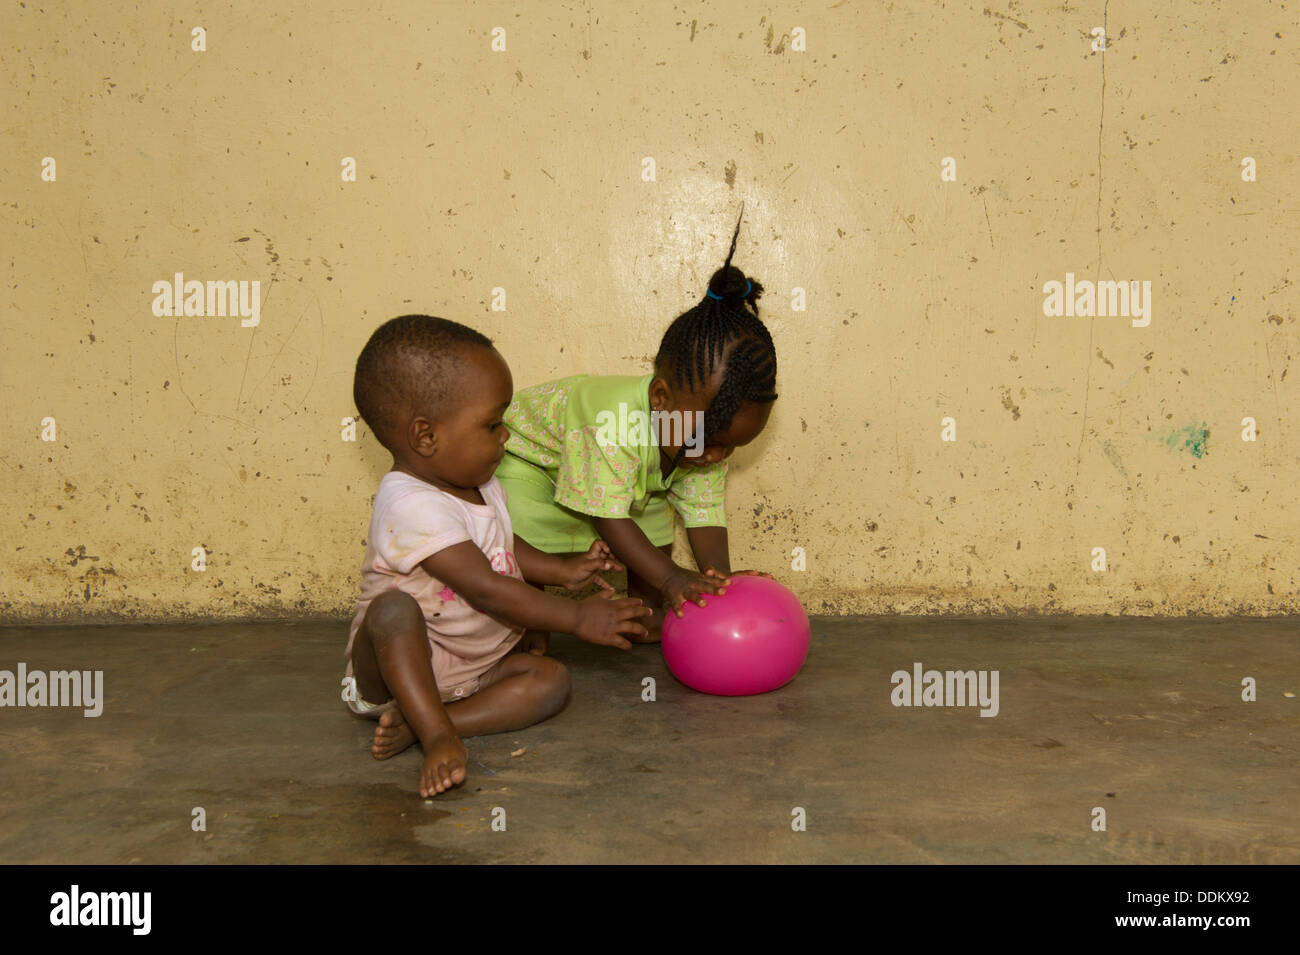 Les tout-petits coin sur un plancher de béton au Nigeria Banque D'Images